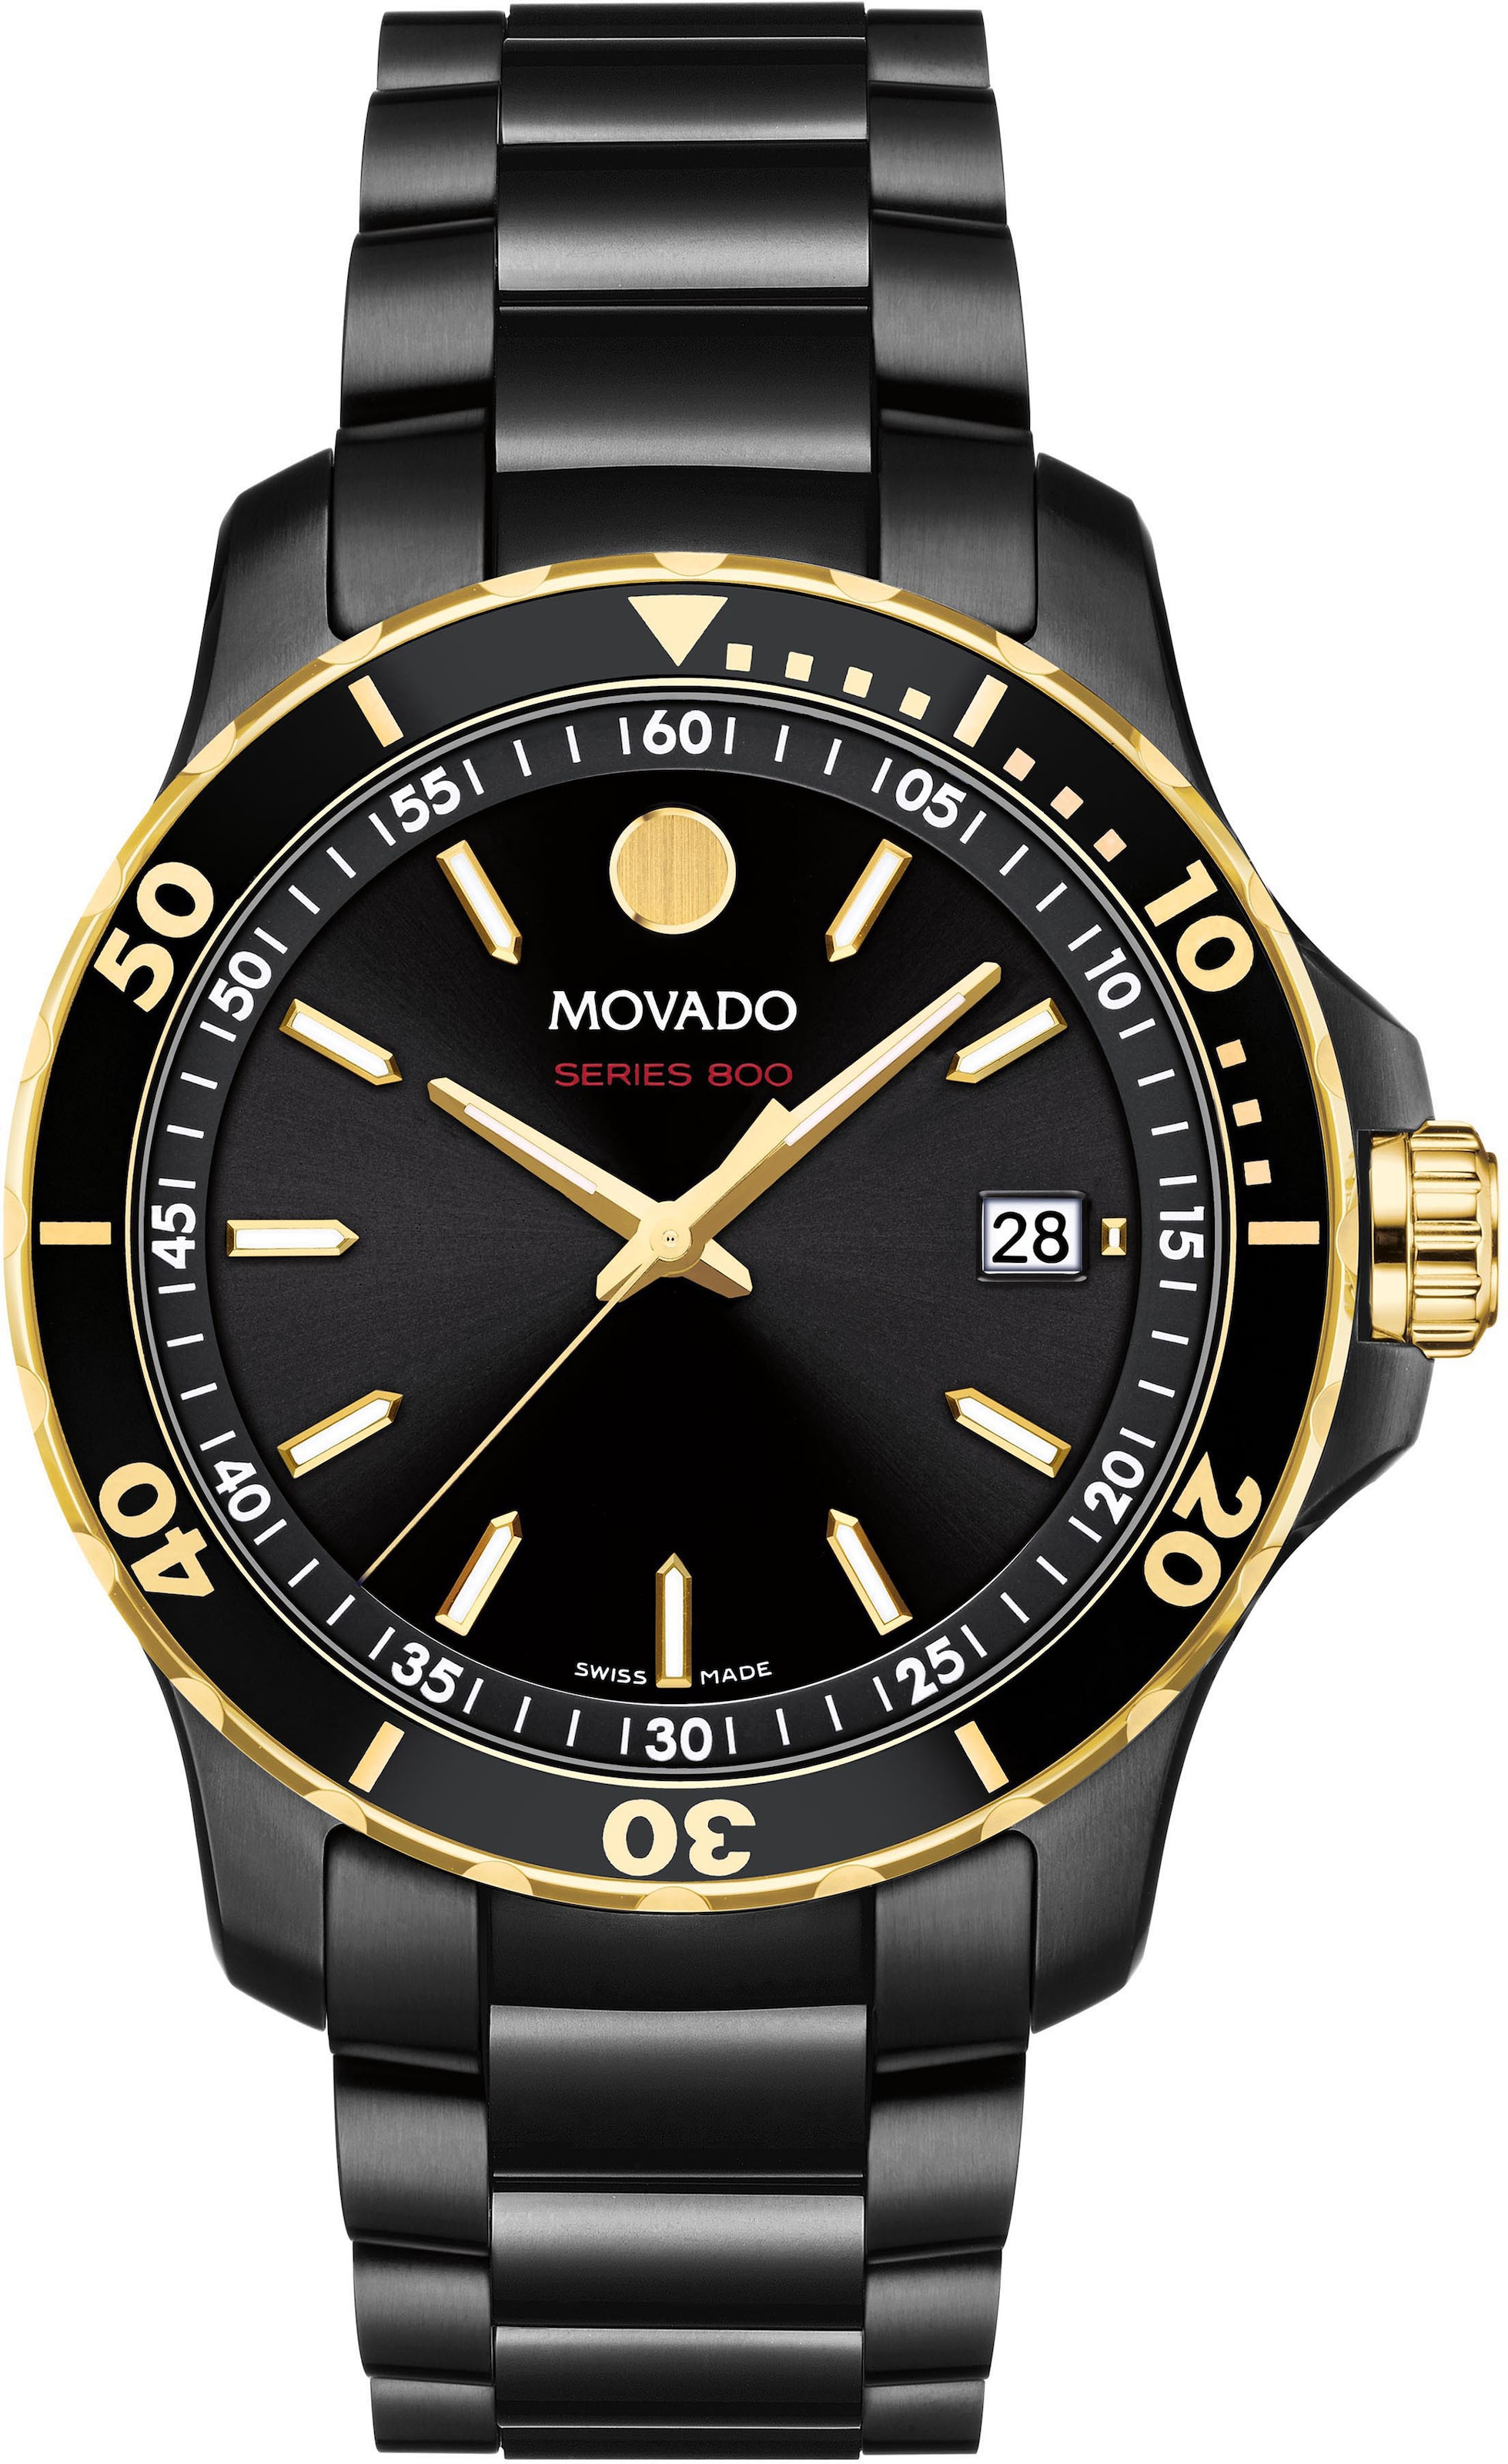 MOVADO Schweizer Uhr »Series 800, online kaufen 2600161« BAUR 